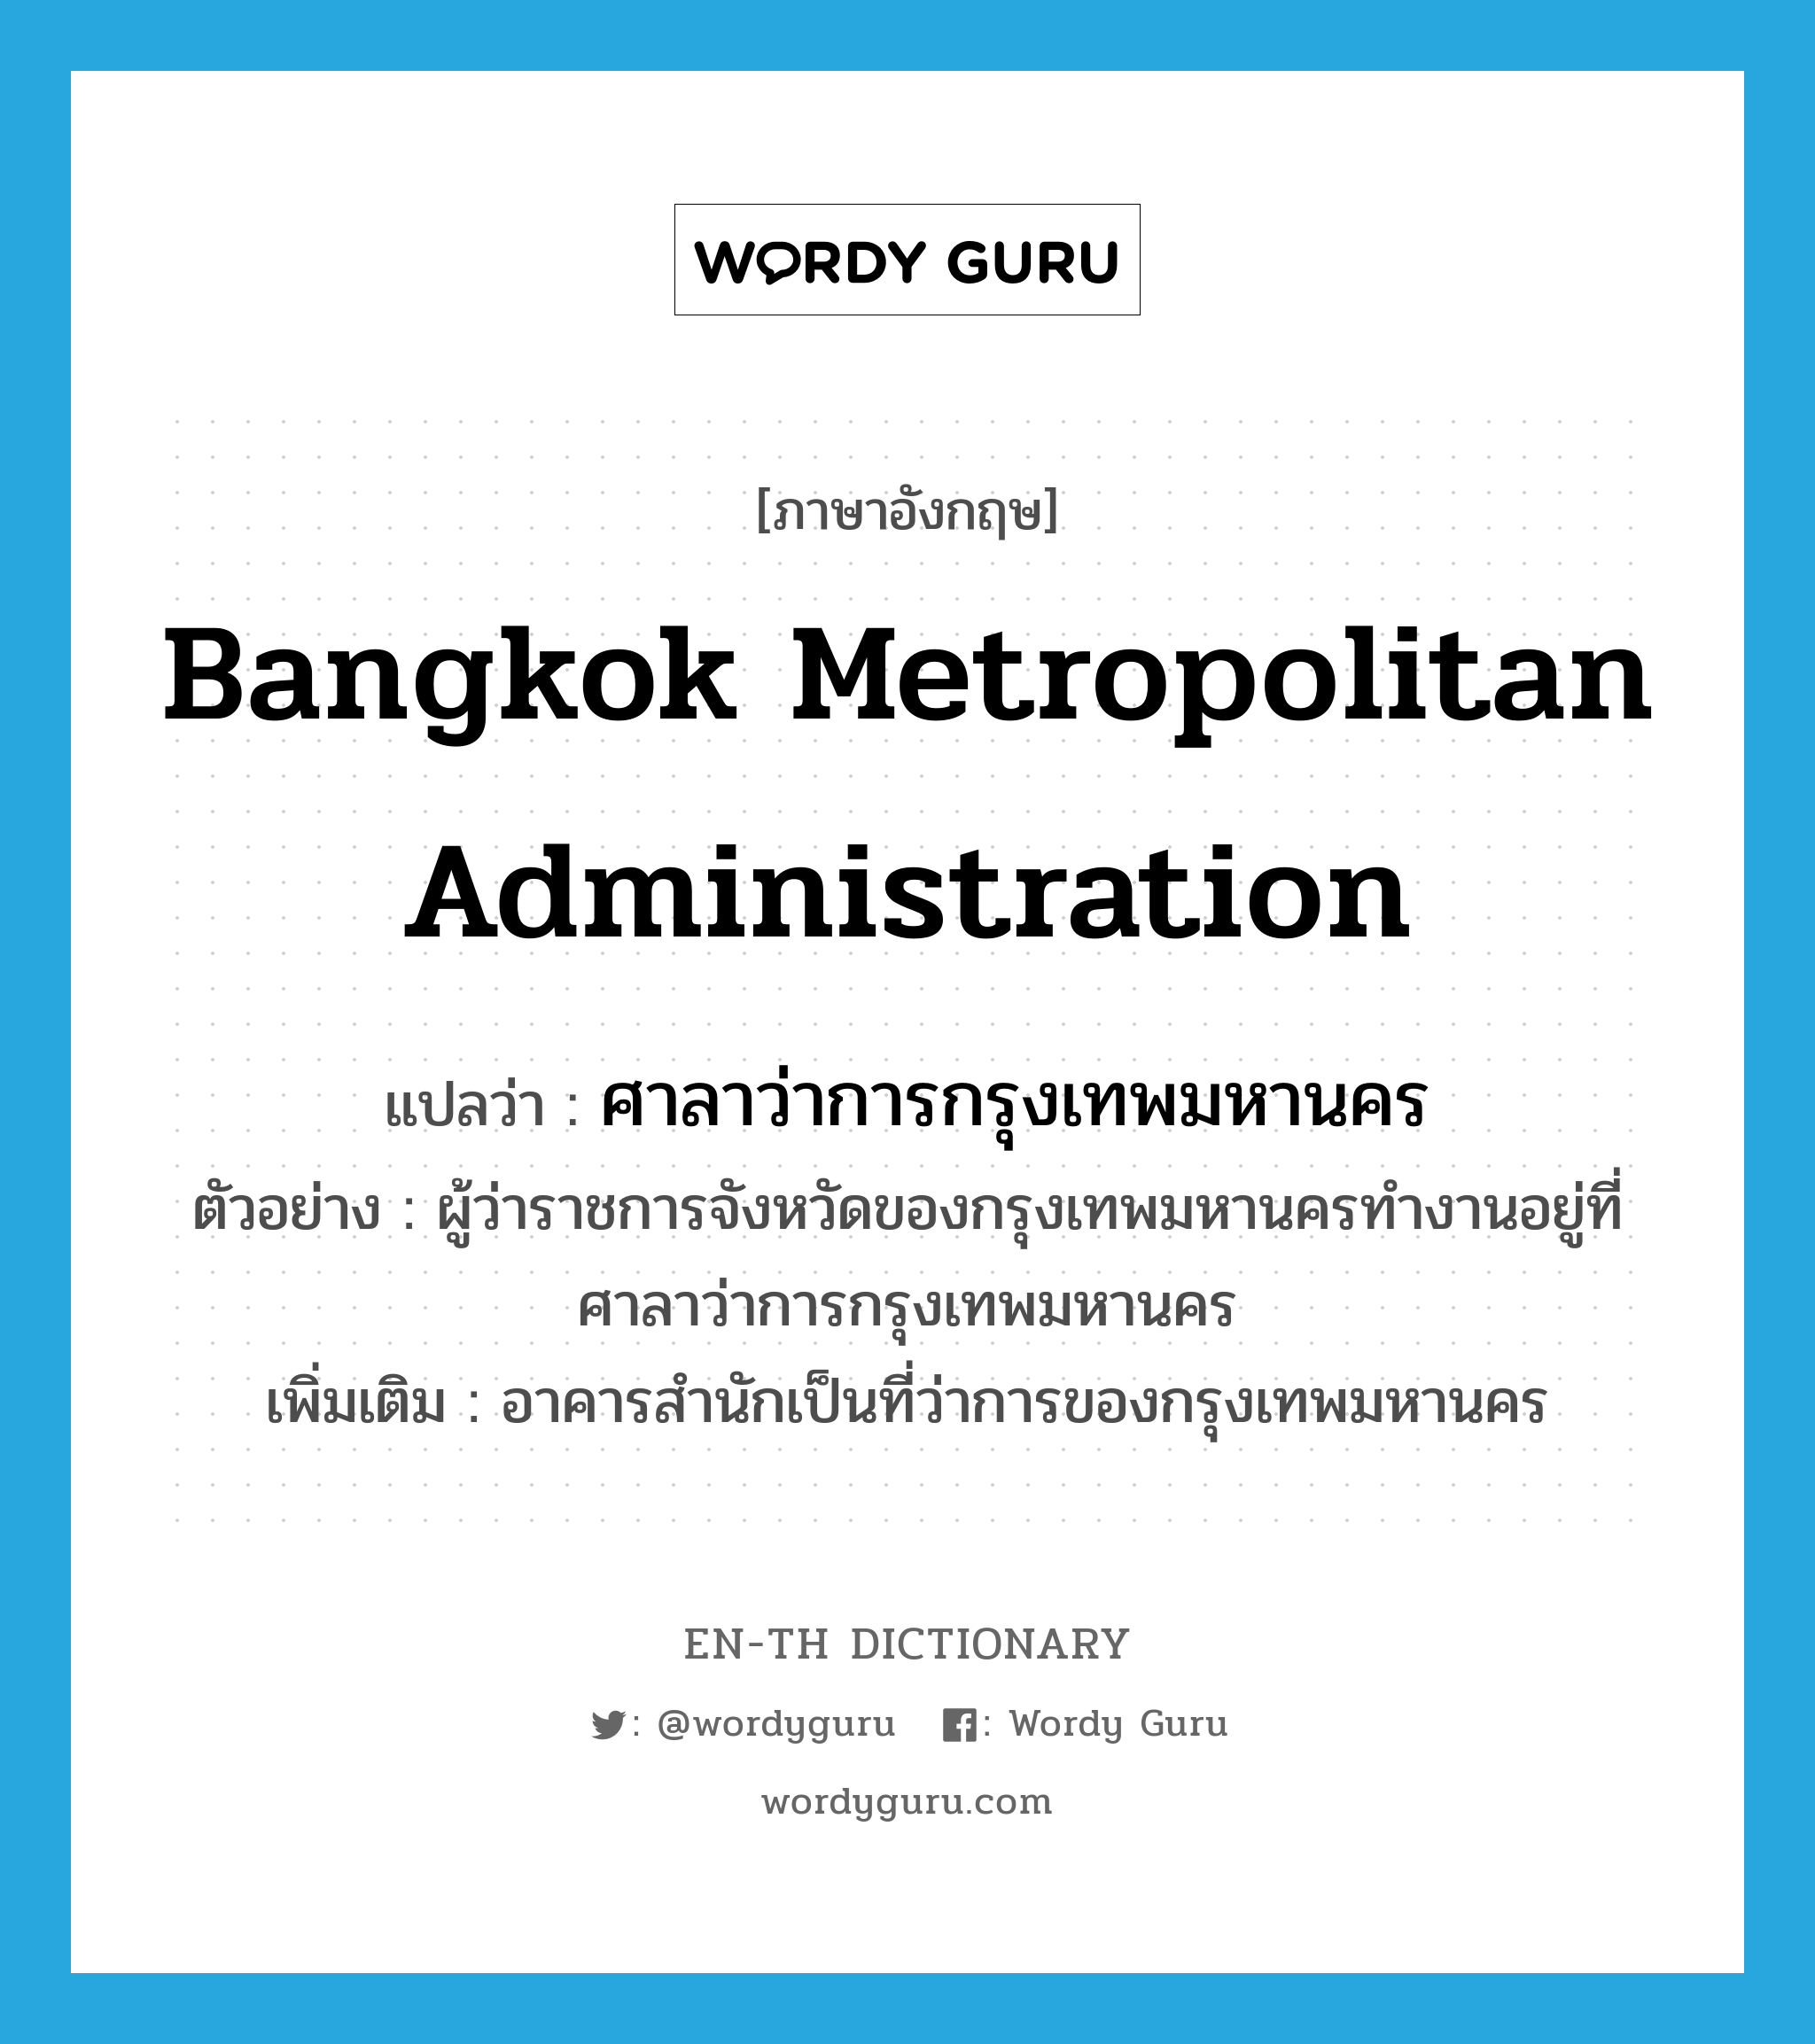 Bangkok Metropolitan Administration แปลว่า?, คำศัพท์ภาษาอังกฤษ Bangkok Metropolitan Administration แปลว่า ศาลาว่าการกรุงเทพมหานคร ประเภท N ตัวอย่าง ผู้ว่าราชการจังหวัดของกรุงเทพมหานครทำงานอยู่ที่ศาลาว่าการกรุงเทพมหานคร เพิ่มเติม อาคารสำนักเป็นที่ว่าการของกรุงเทพมหานคร หมวด N